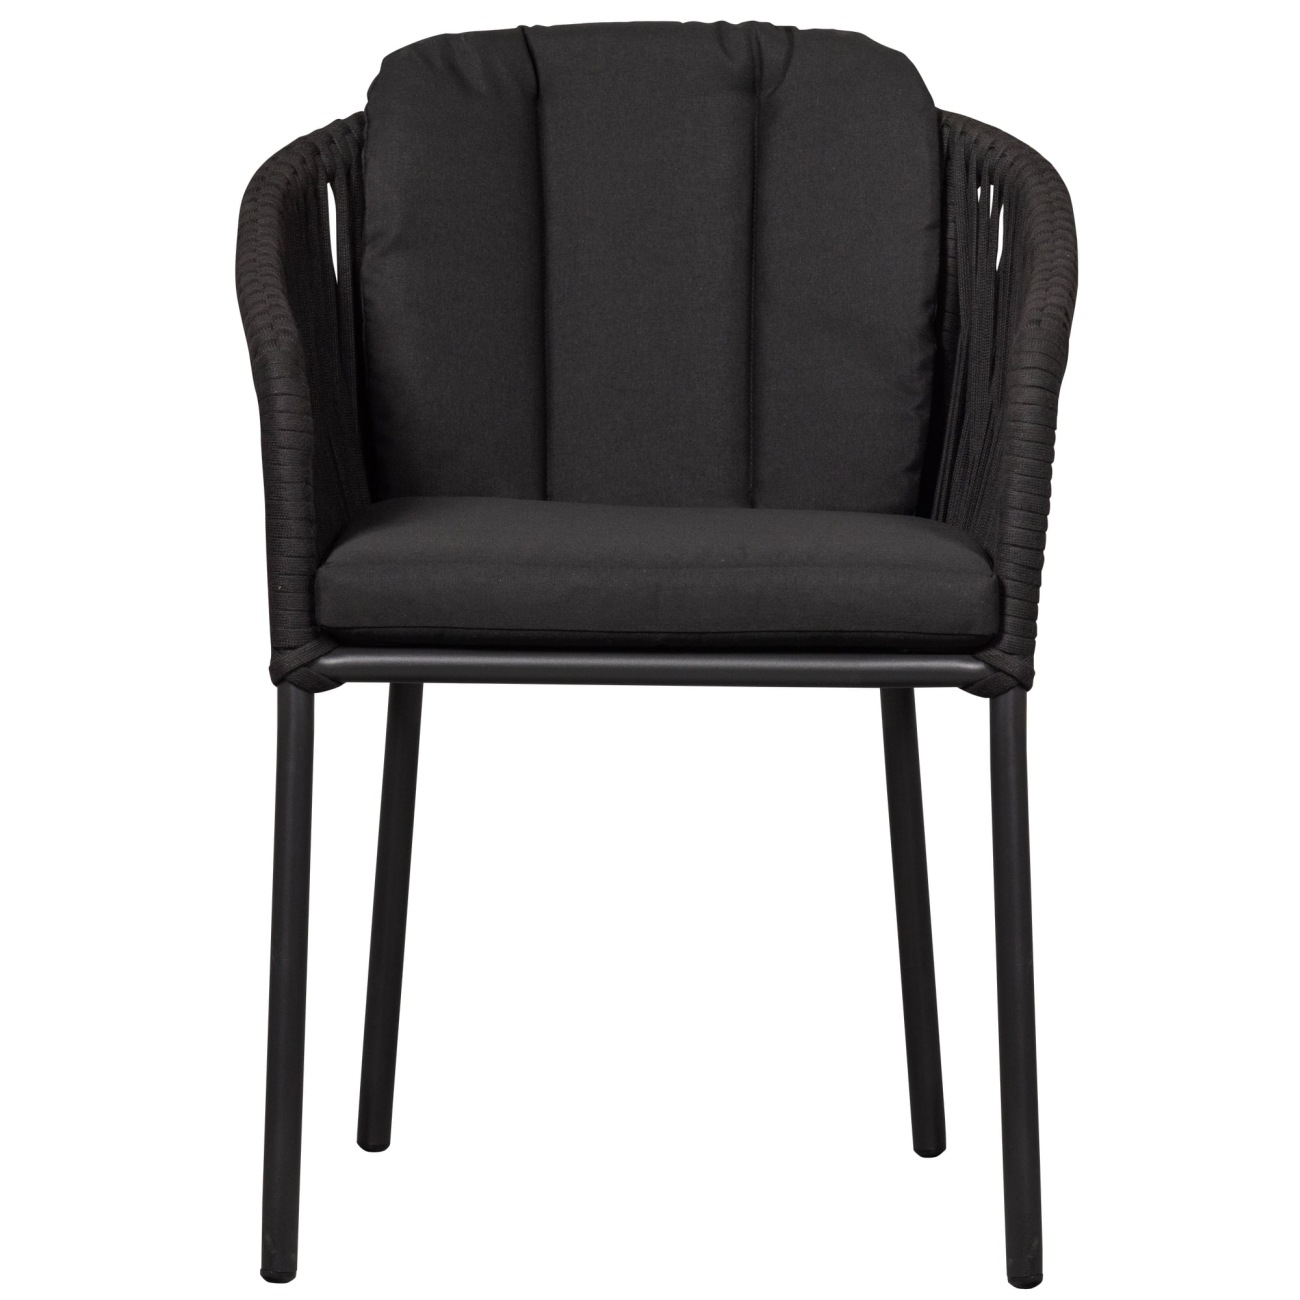 Der Gartenstuhl Yukon überzeugt mit seinem modernen Design. Gefertigt wurde er aus geflochtenem Tauwerk, welches einen schwarzen Farbton besitzt. Das Gestell ist aus Aluminium und hat eine schwarze Farbe. Der Stuhl besitzt eine Sitzhöhe von 50 cm.